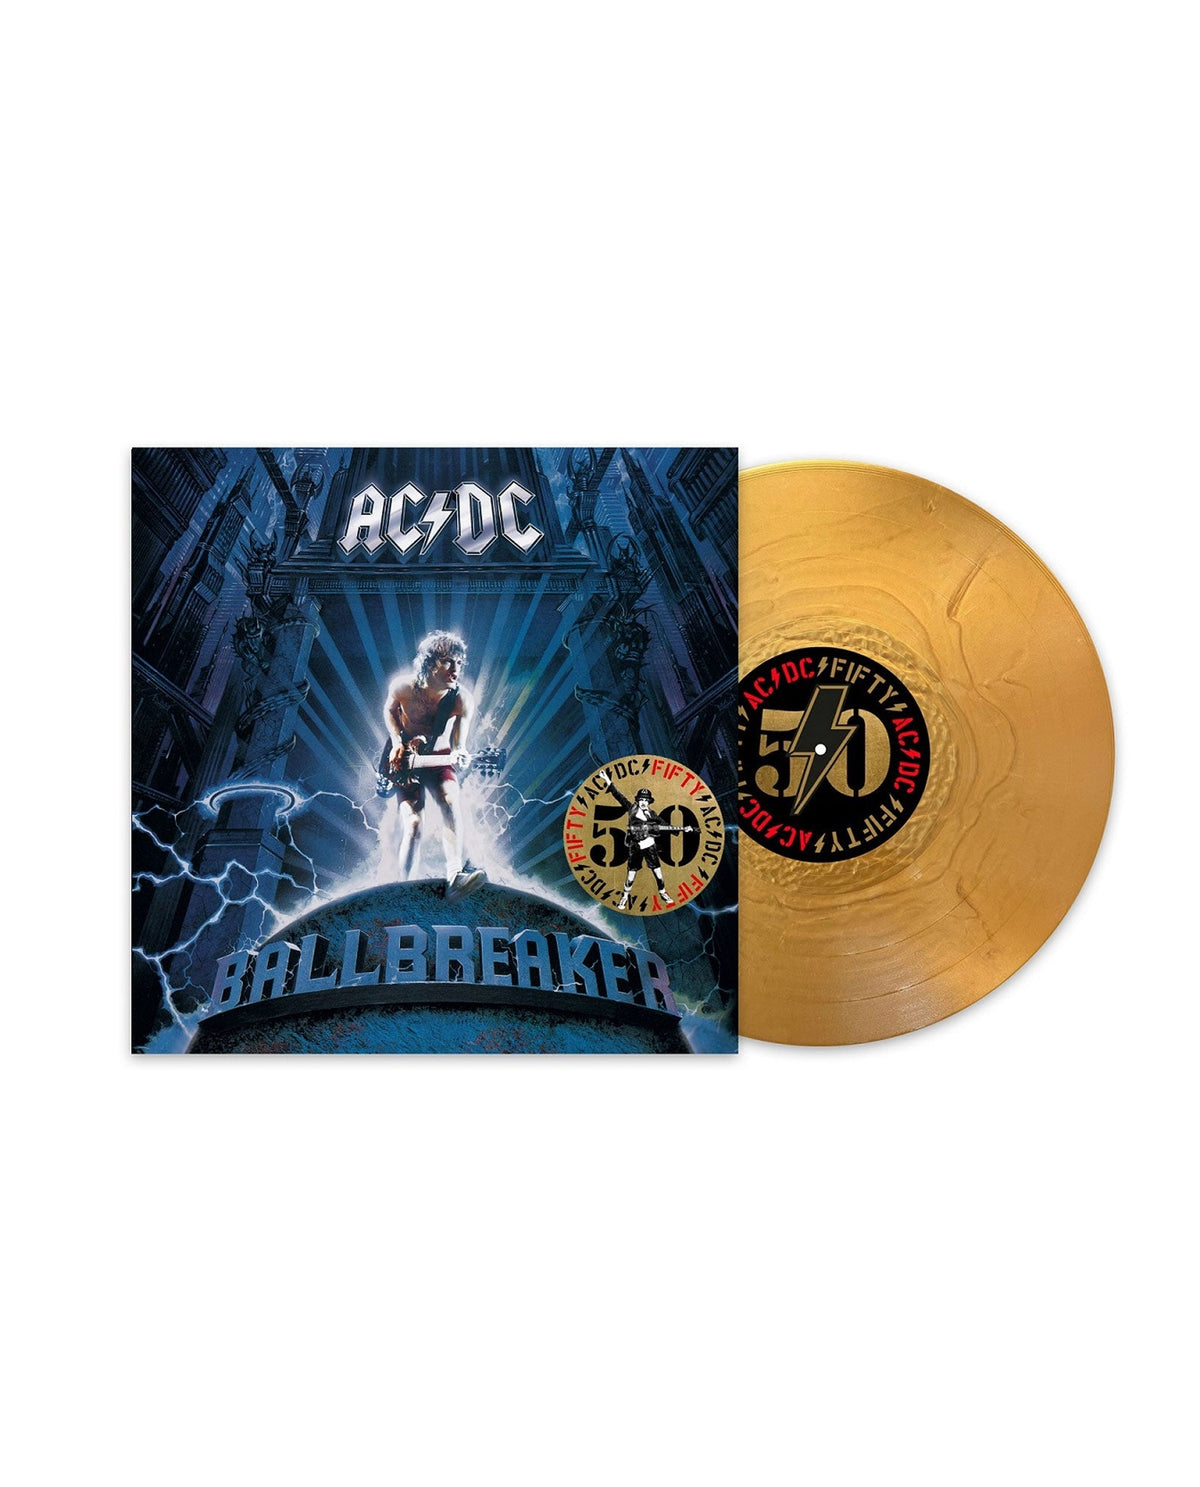 AC/DC - LP Vinilo Dorado "Ballbreaker" Ed. 50 aniversario - D2fy · Rocktud - Rocktud